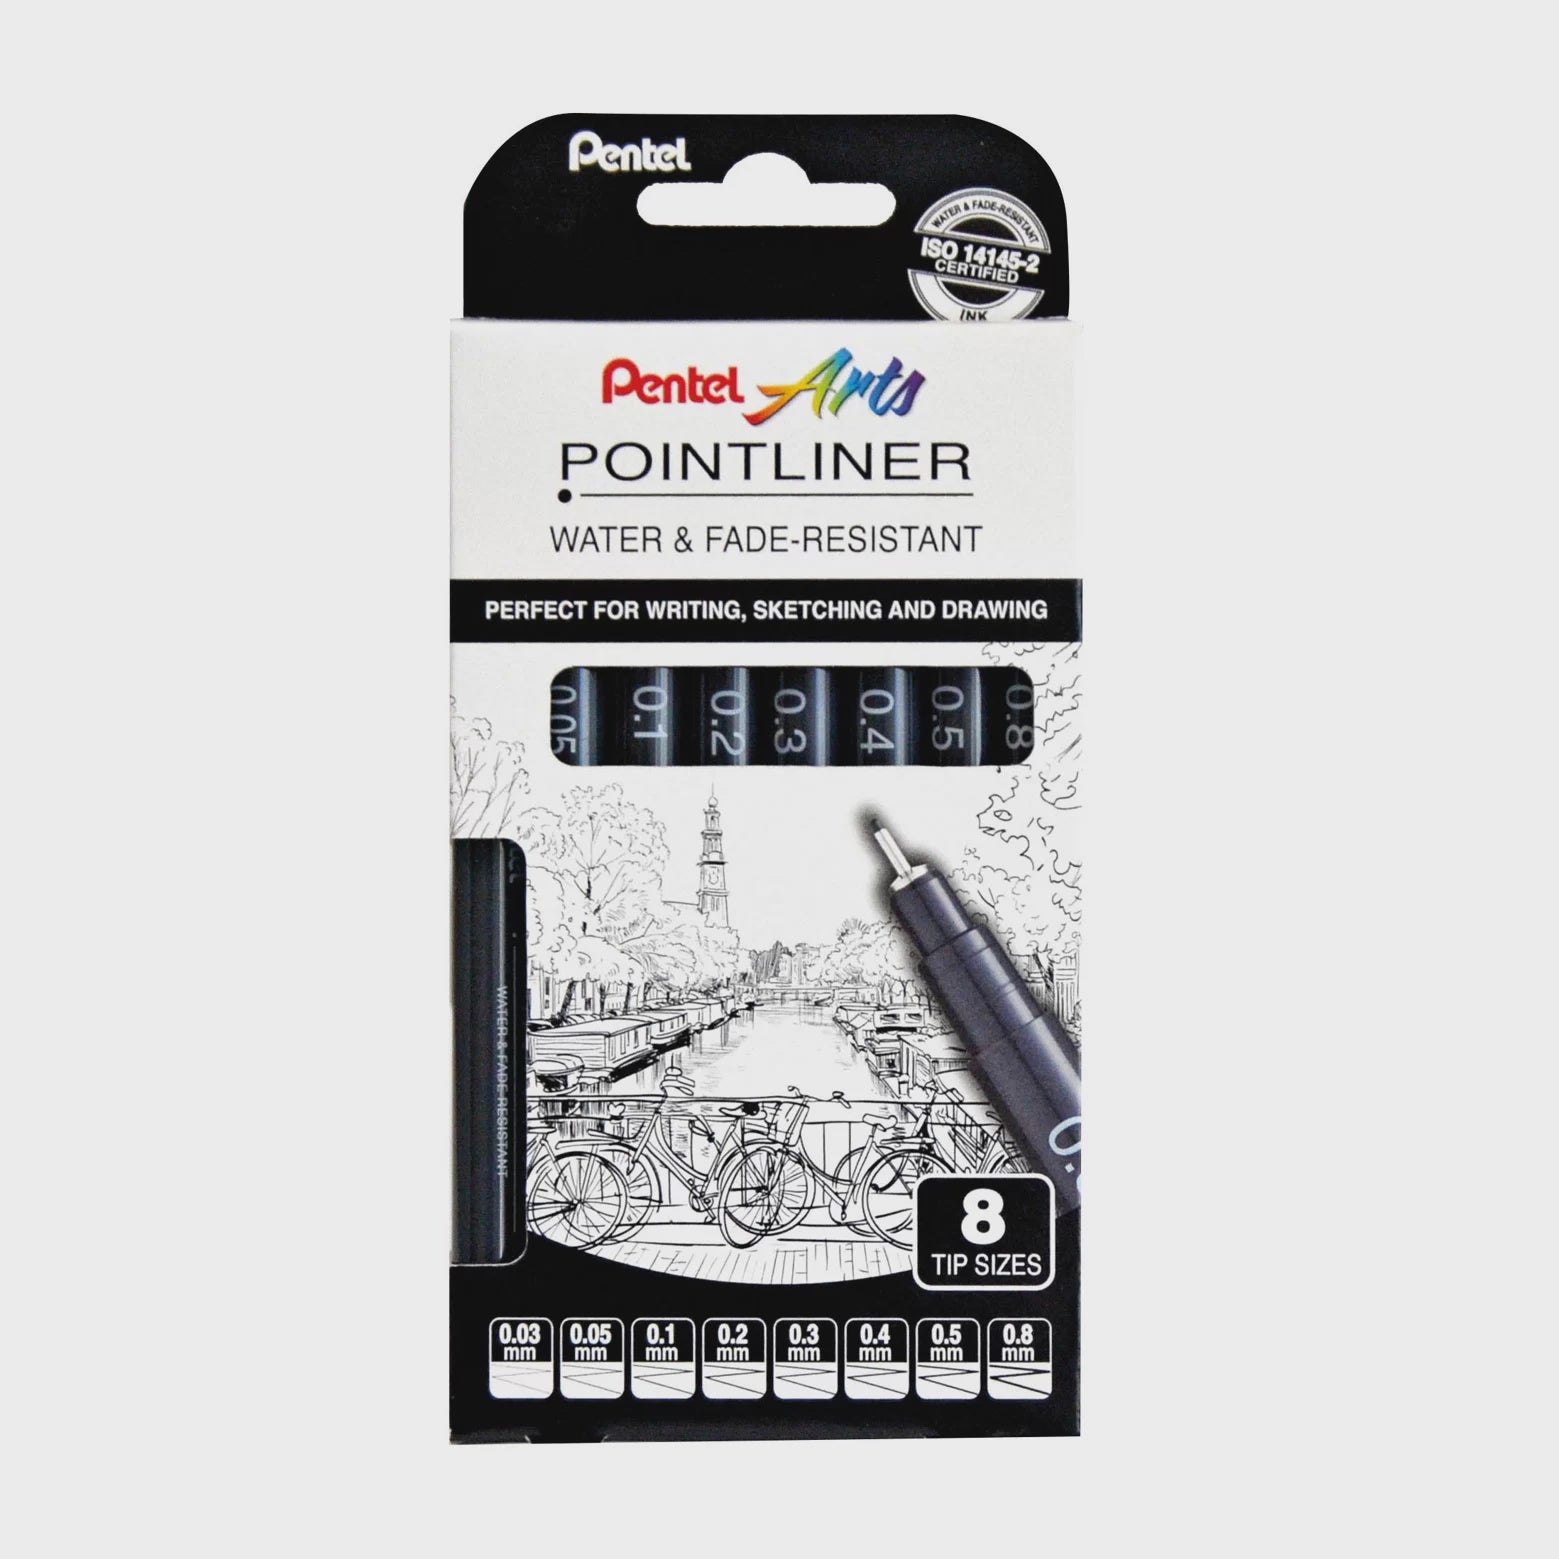 Pentel Pointliner 8-piece cardboard pack